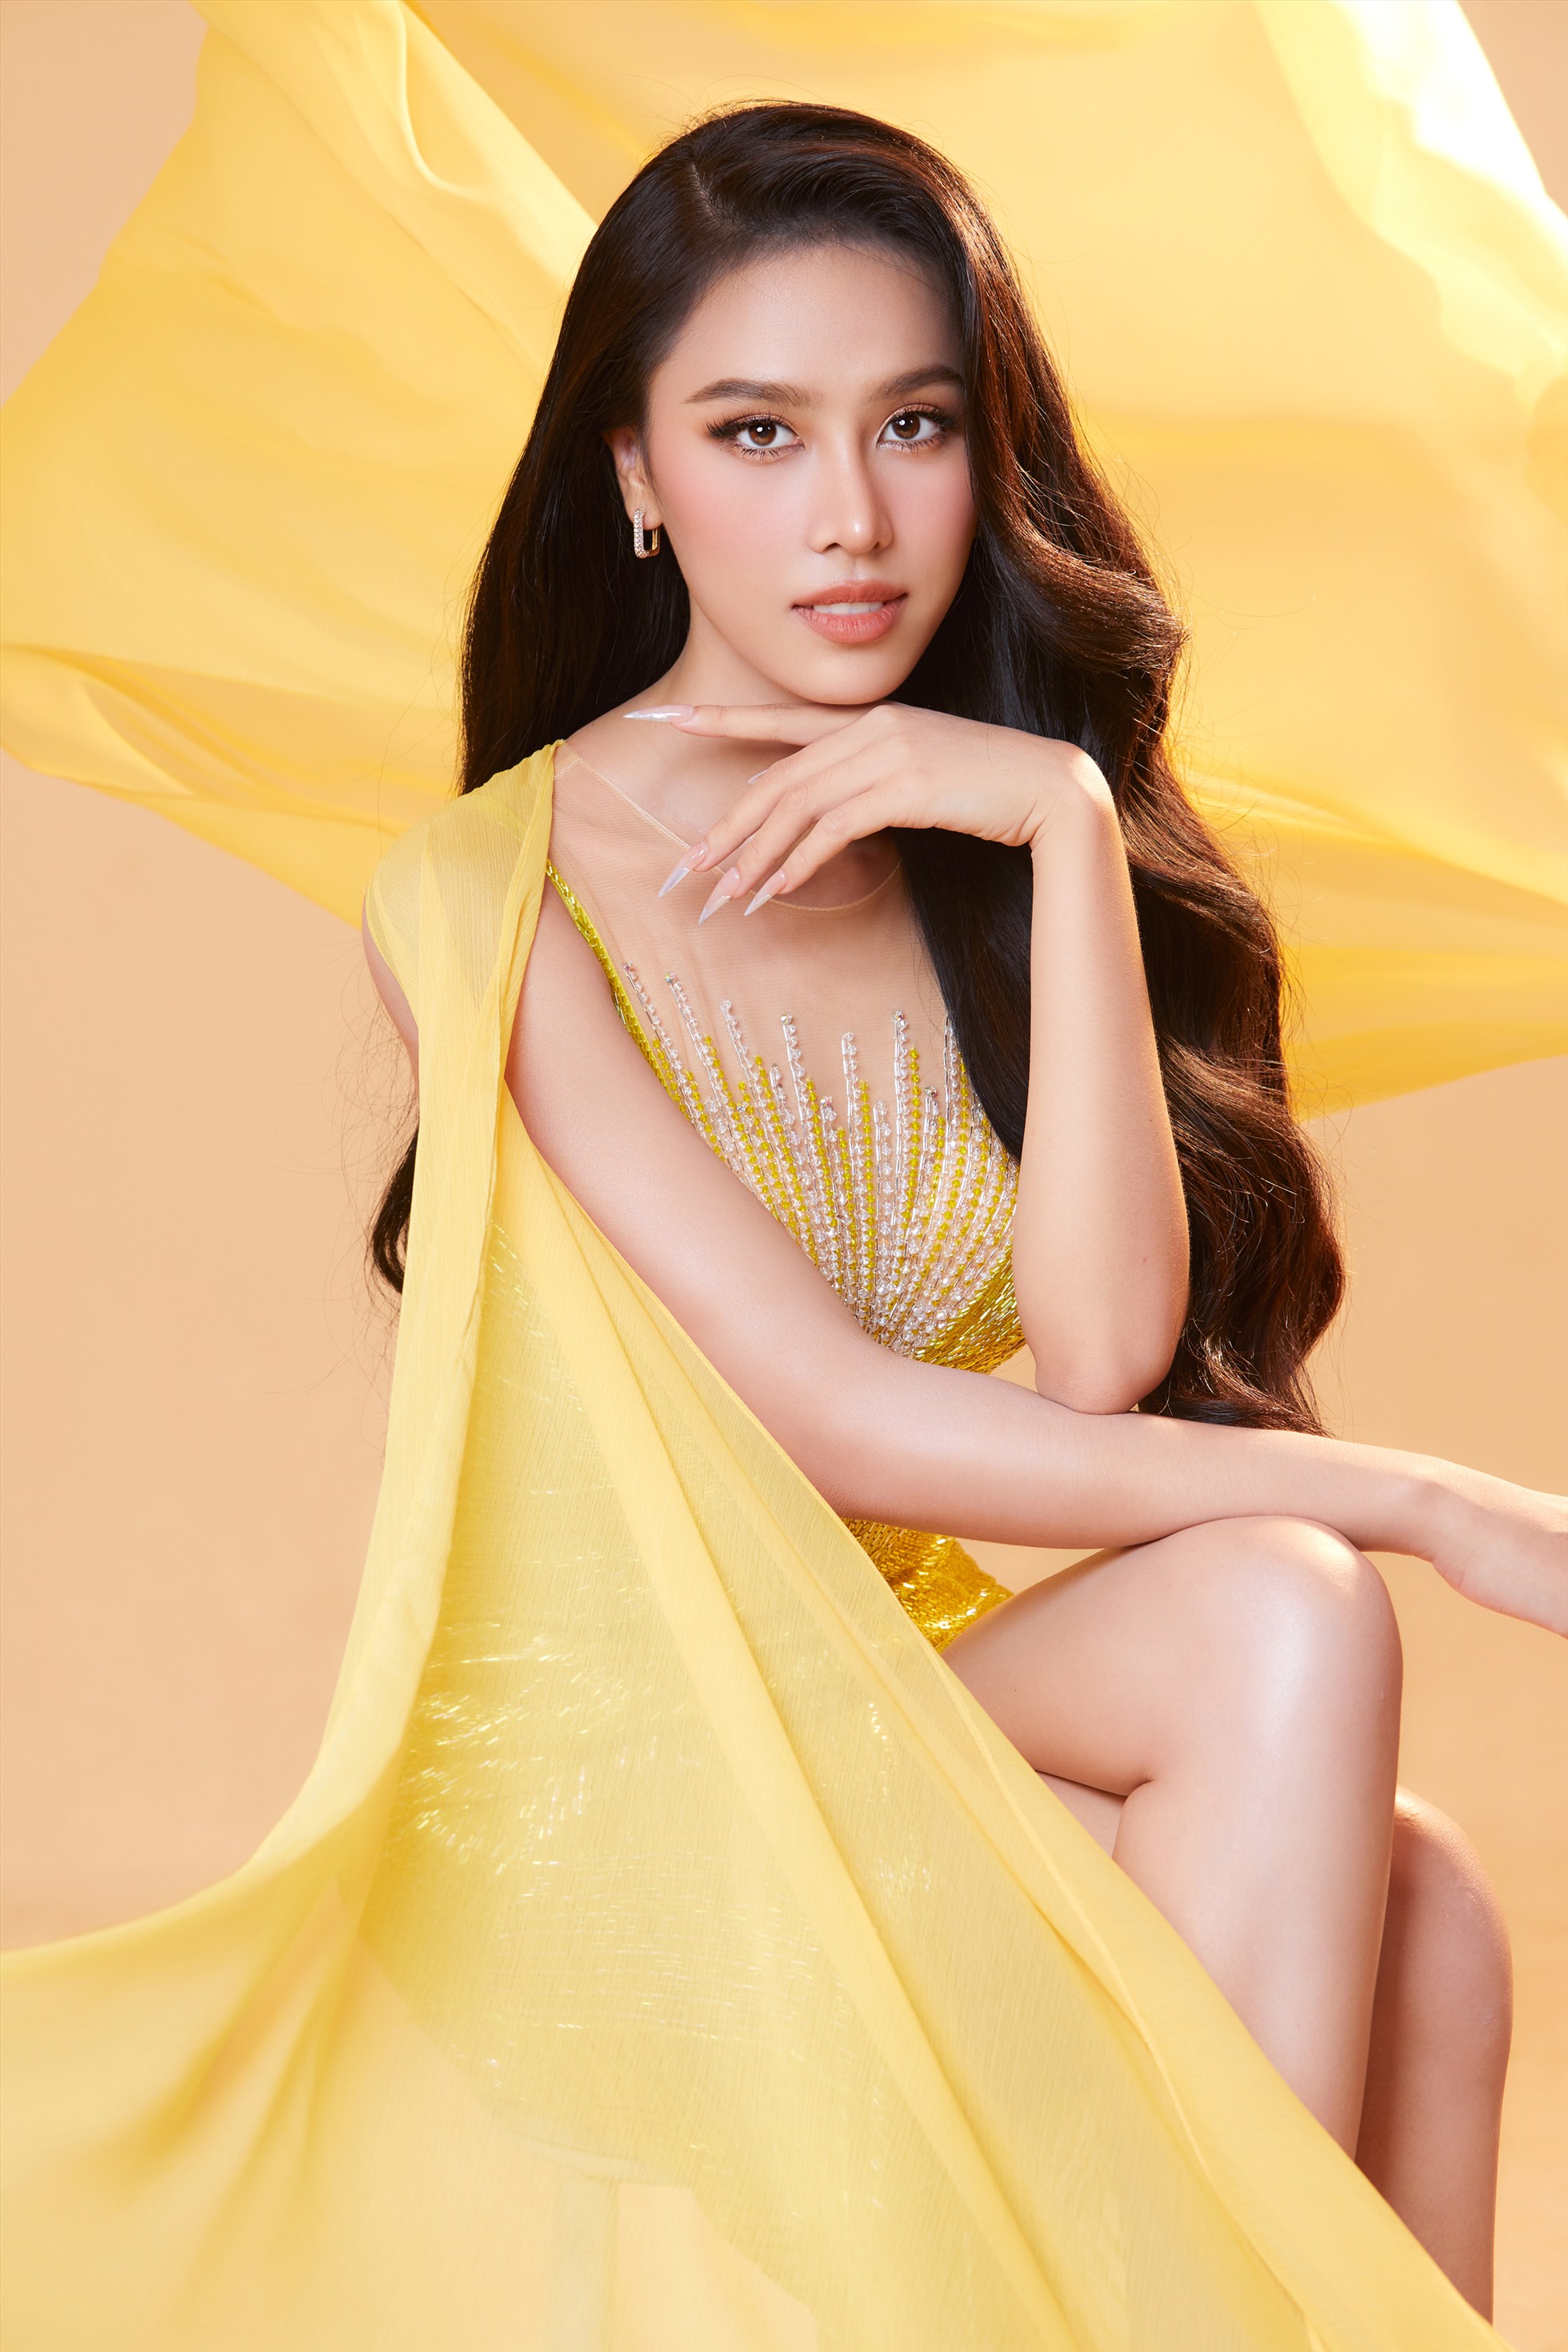 Trong bộ ảnh Á hậu Ngọc Hằng đã tỏa sáng khi đeo dải sash Miss Intercontinental Vietnam với nhan sắc rạng rỡ cùng chiều cao nổi bật.